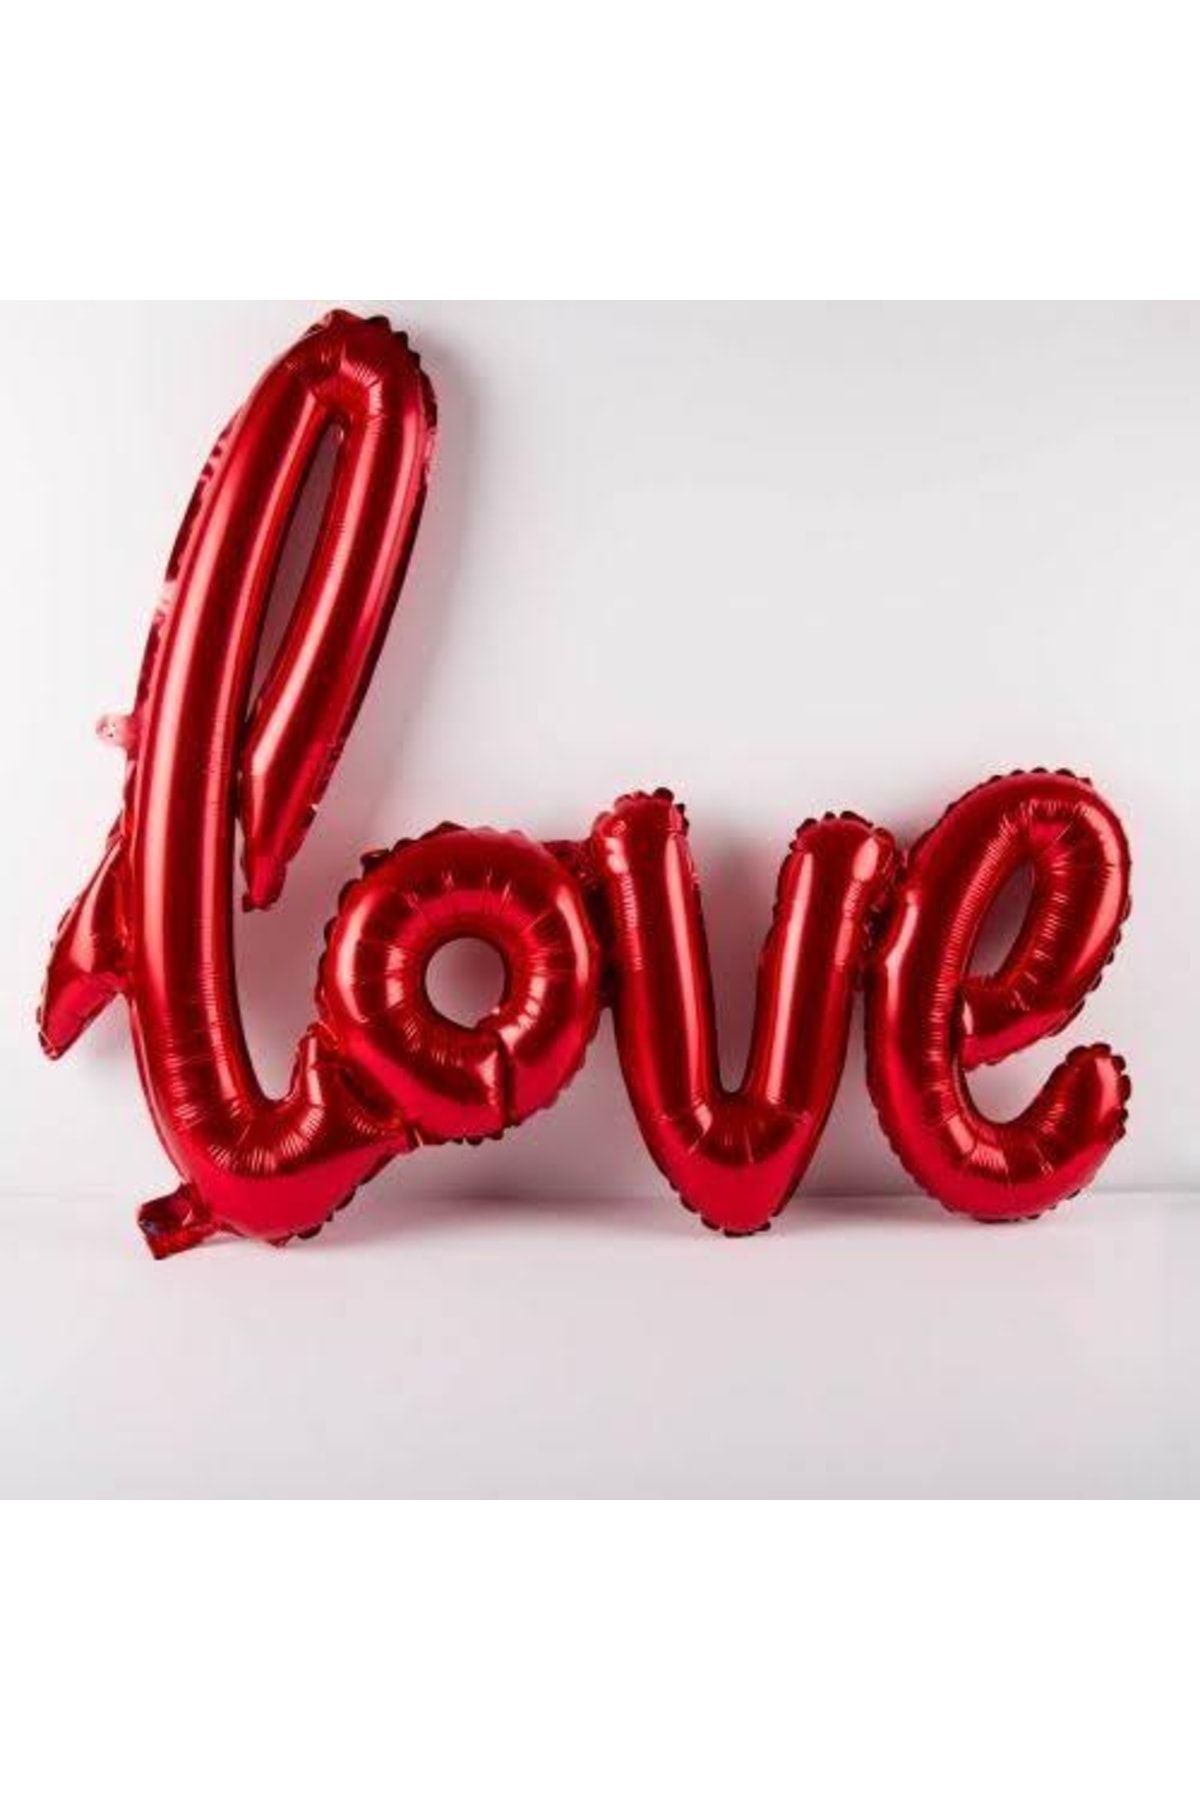 BALONBURADA Folyo Balon Love El Yazılı Helyum Balon Kırmızı Renk